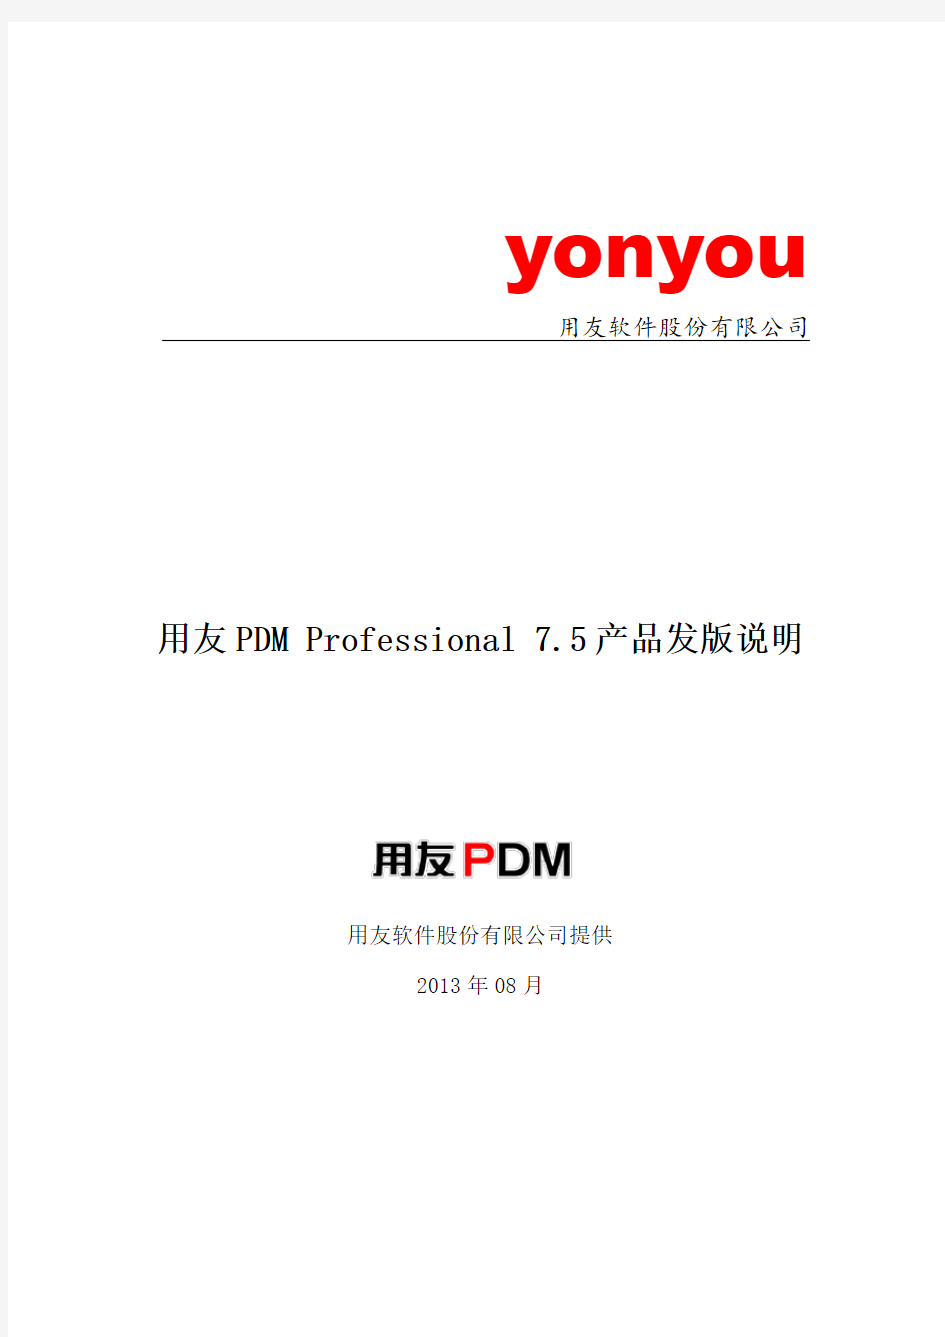 用友PDM Professional 7.5产品发版说明